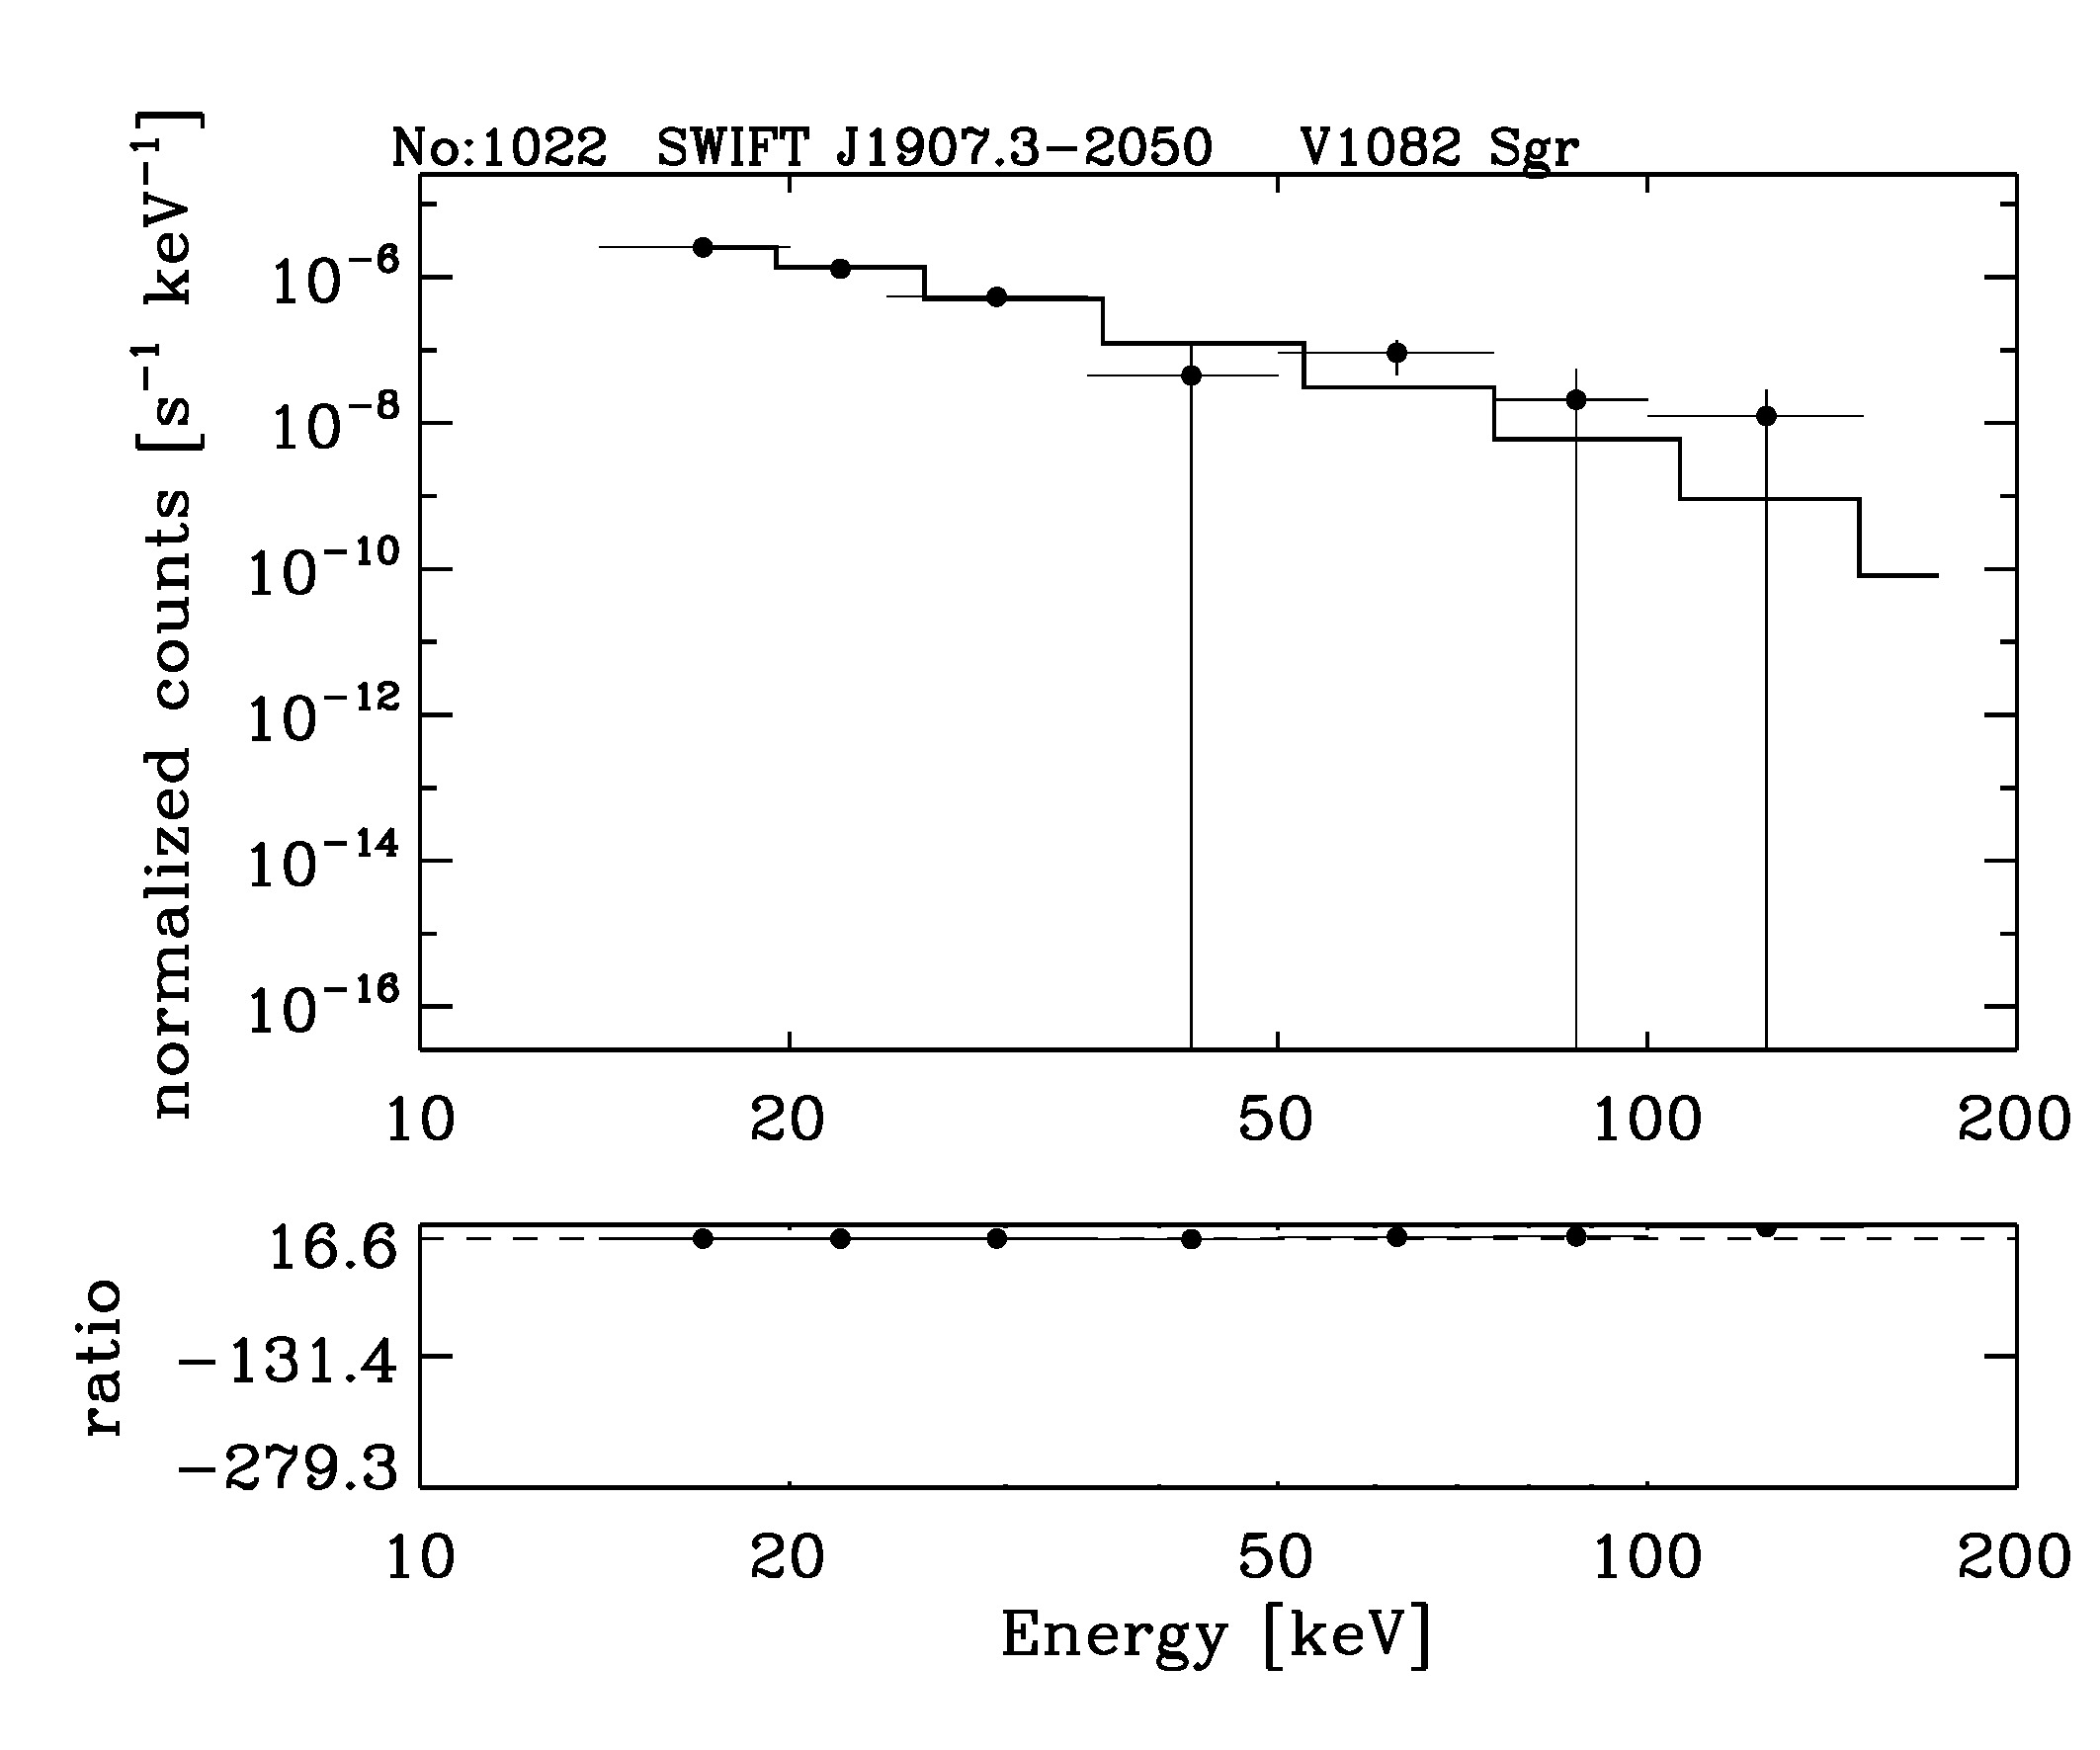 BAT Spectrum for SWIFT J1907.3-2050